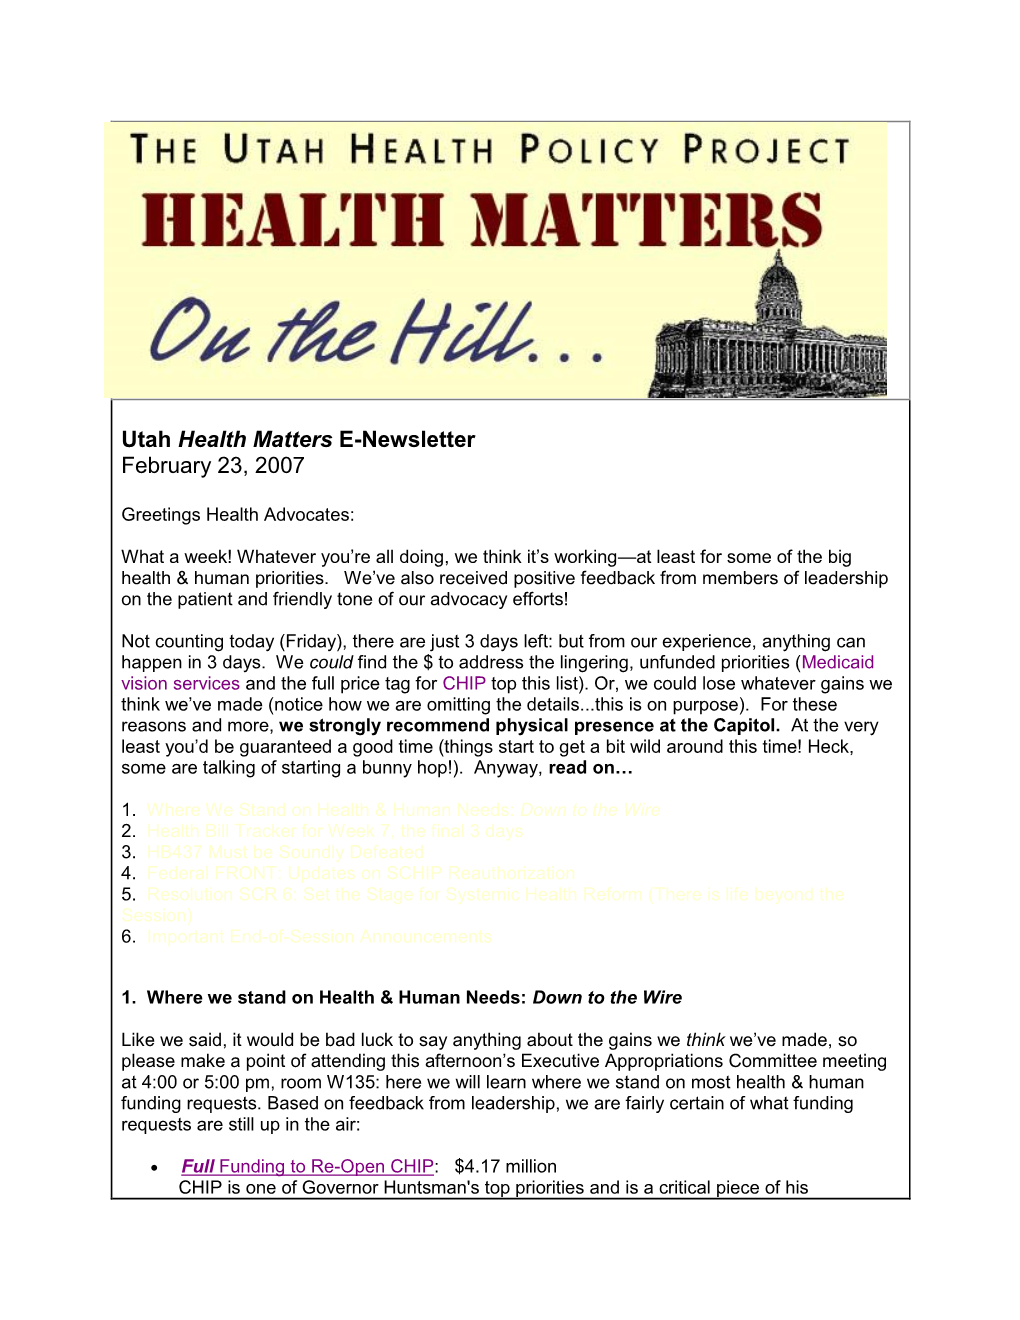 Utah Health Matters E-Newsletter February 23, 2007